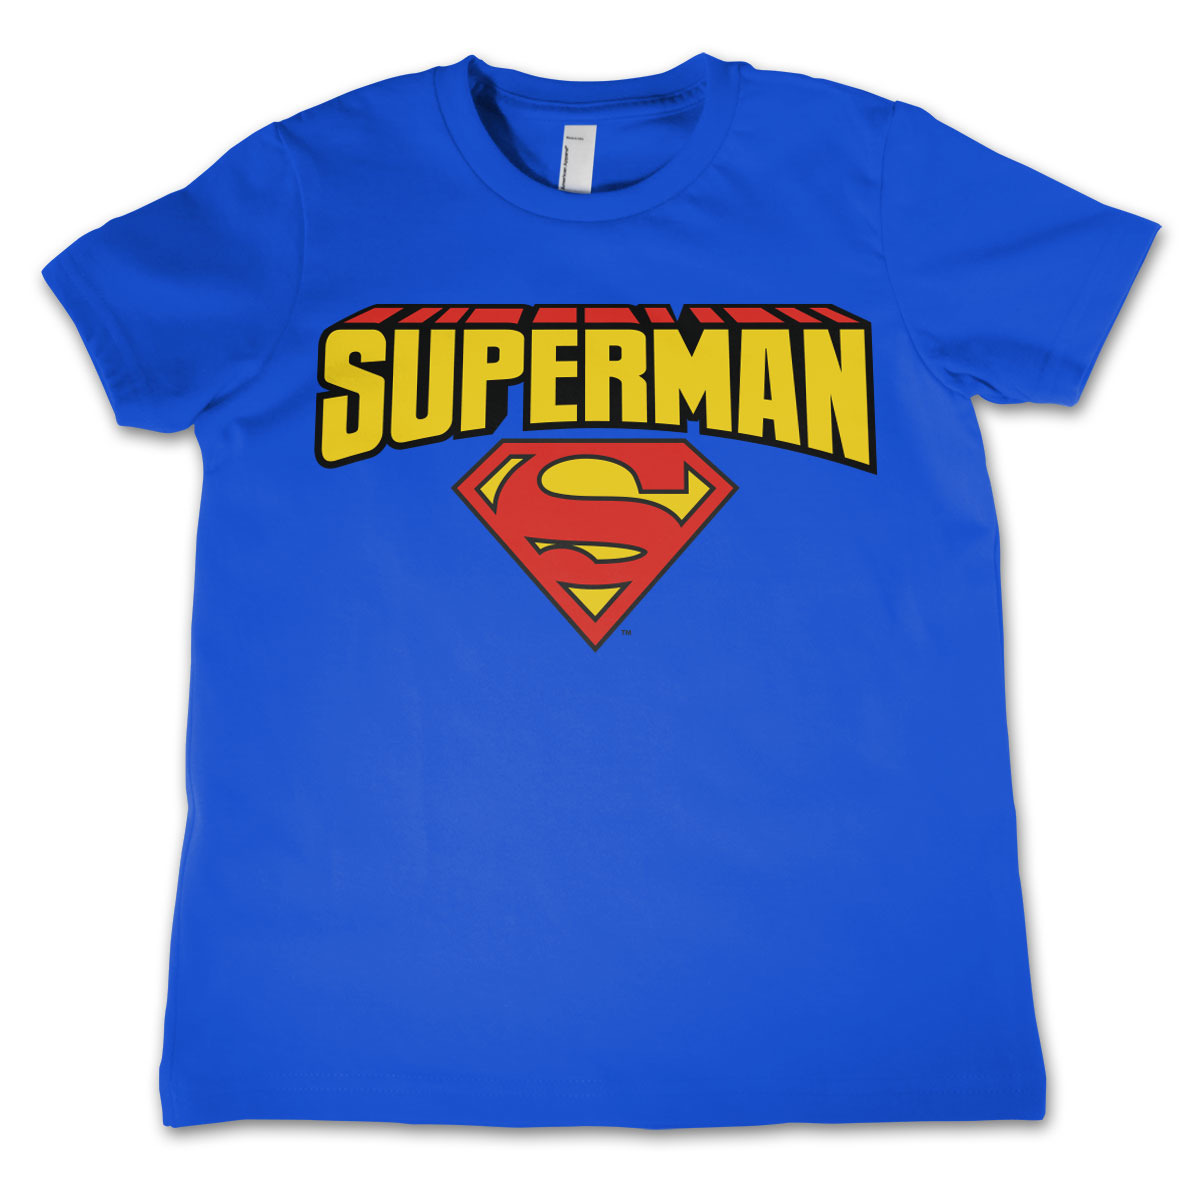 Superman verkleed t-shirt voor jongens/meisjes